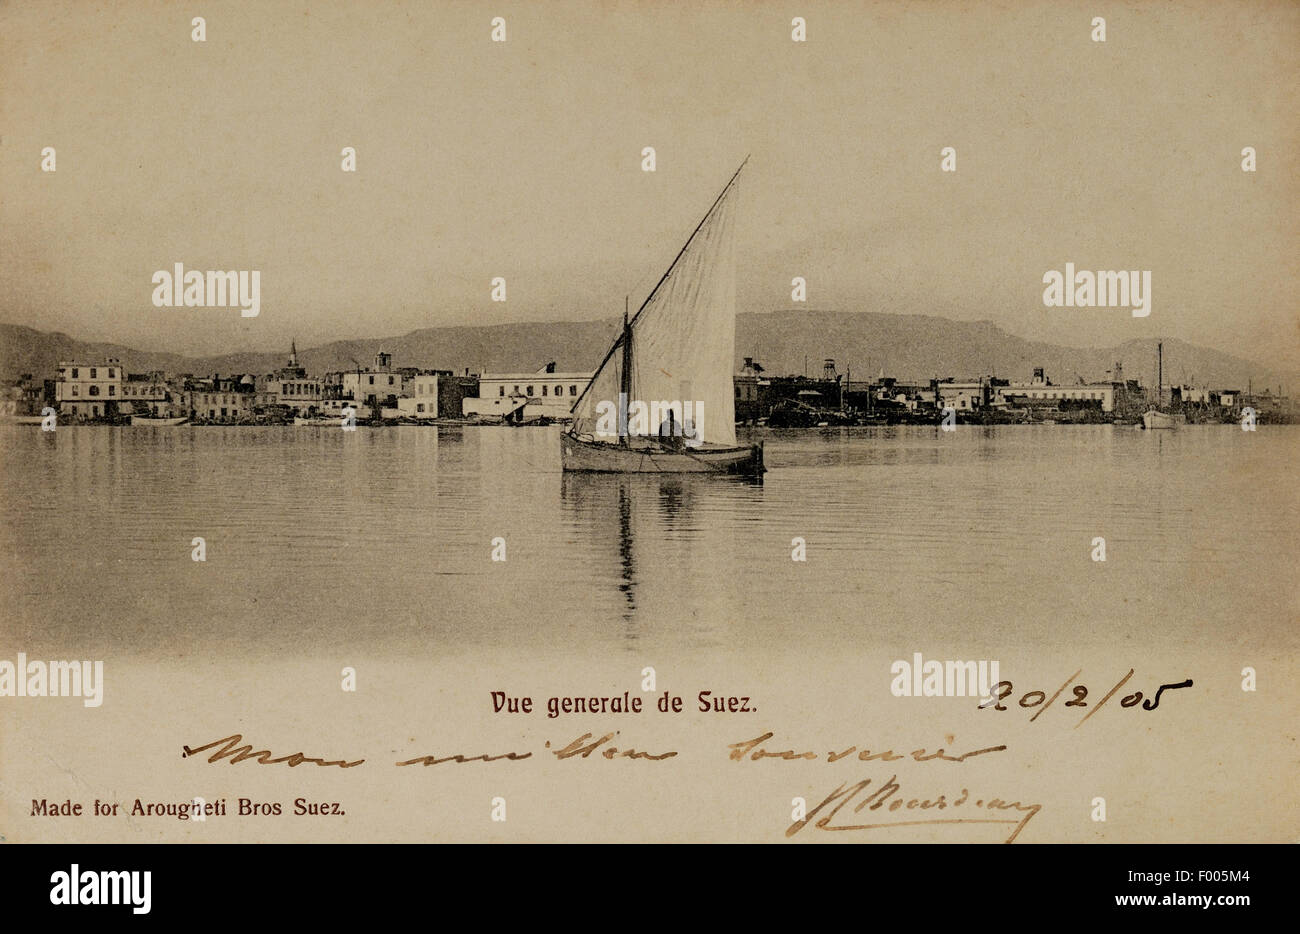 Suez, Ägypten - 1905 - eine alte Postkarte des Hafens in Suez, die Stadt am südlichen Ende des Suez-Kanals. FOTOSAMMLUNG VON BARRY IVERSON COPYRIGHT-ALLE RECHTE VORBEHALTEN Stockfoto